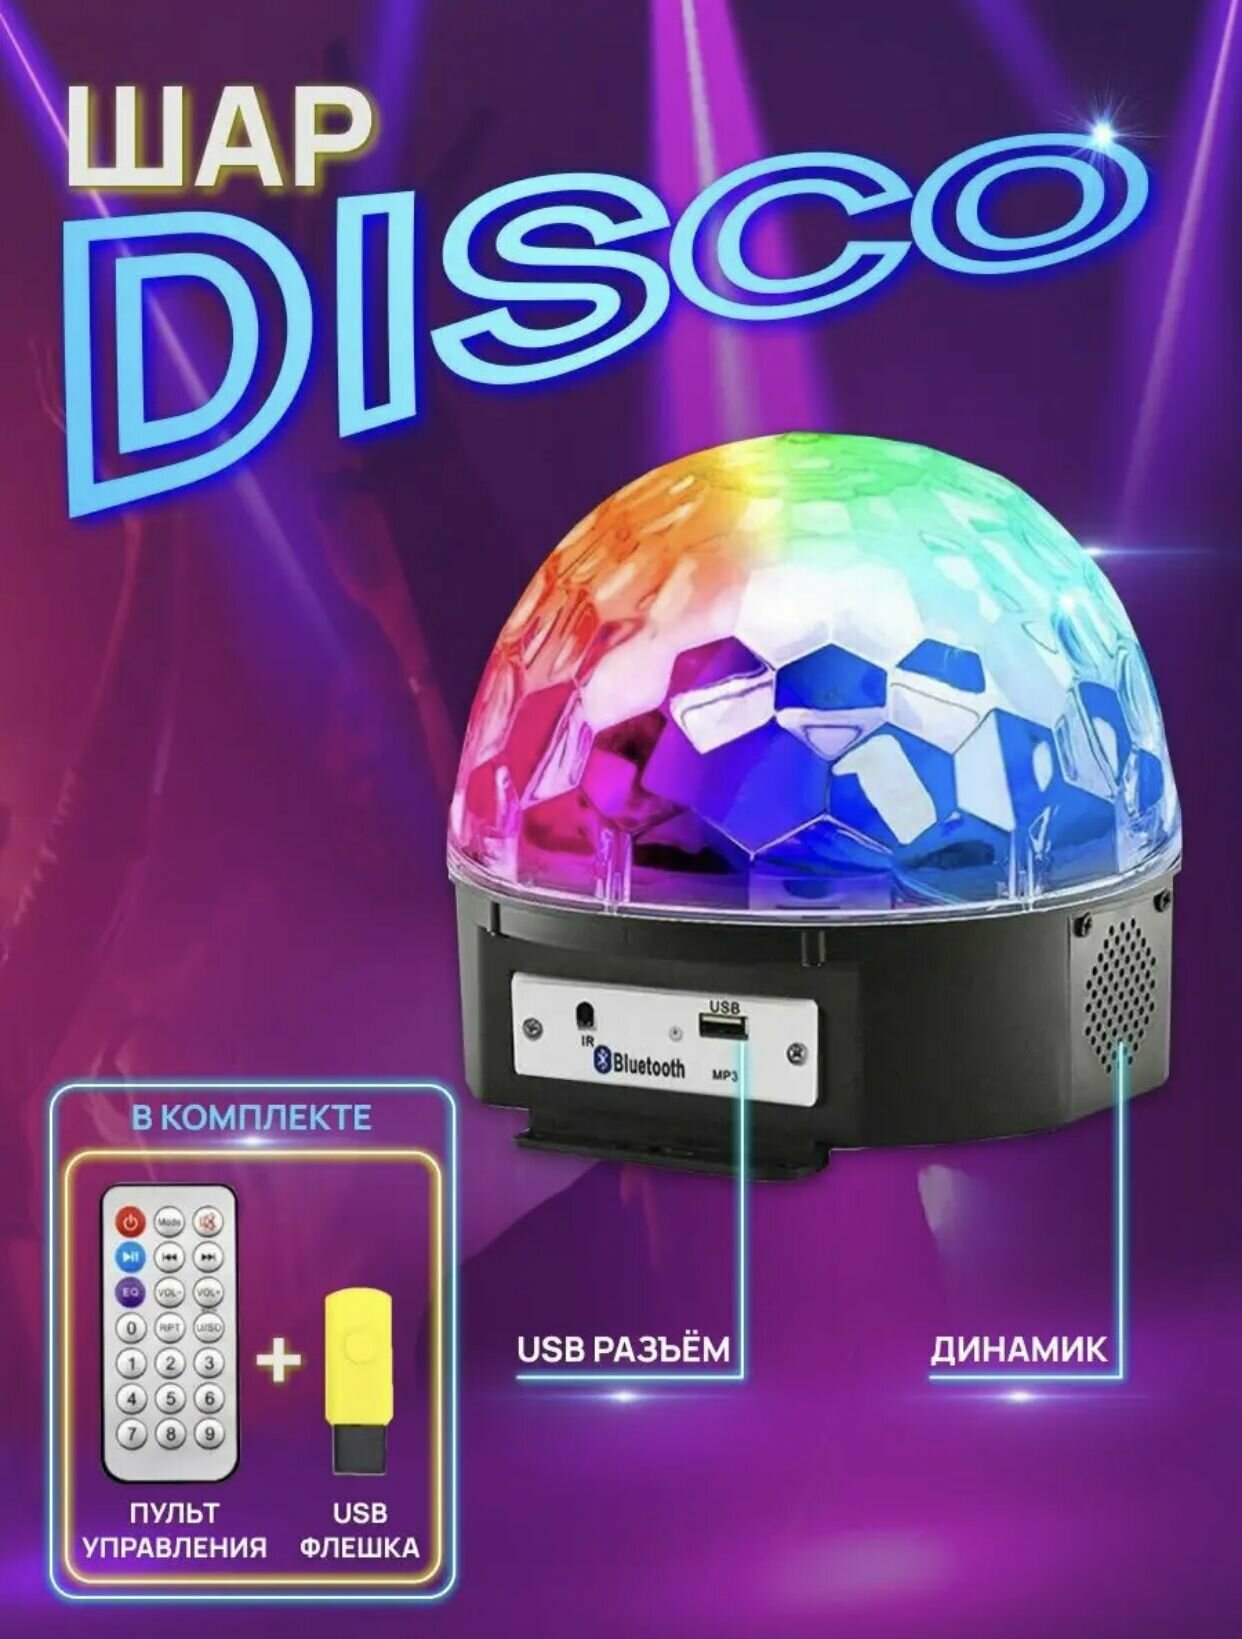 Диско-шар LED светодиодный с MP3-плеером, ПДУ и Bluetooth, FamilyShop - фотография № 2